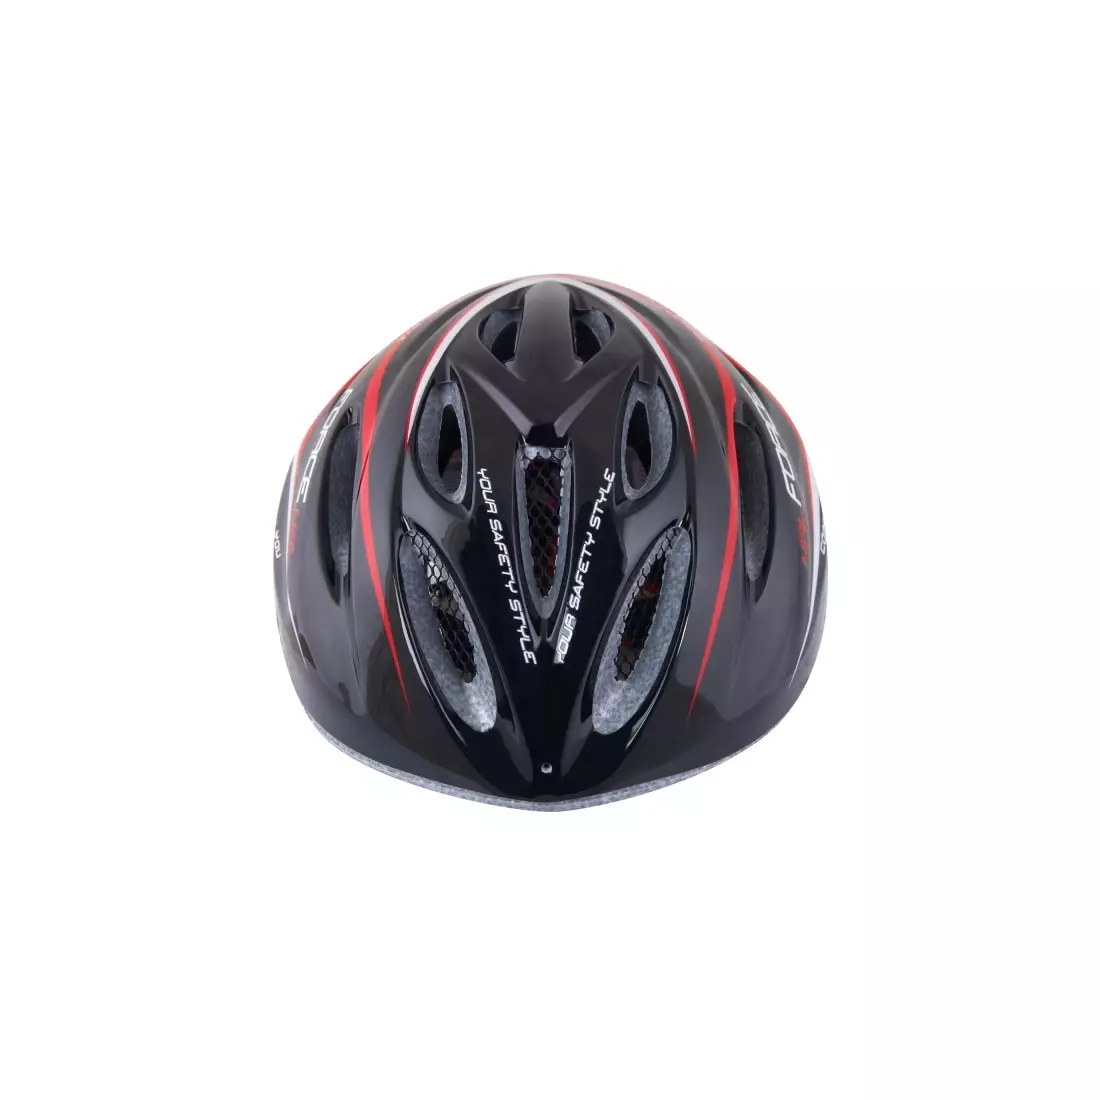 FORCE HAL Bicycle helmet red  